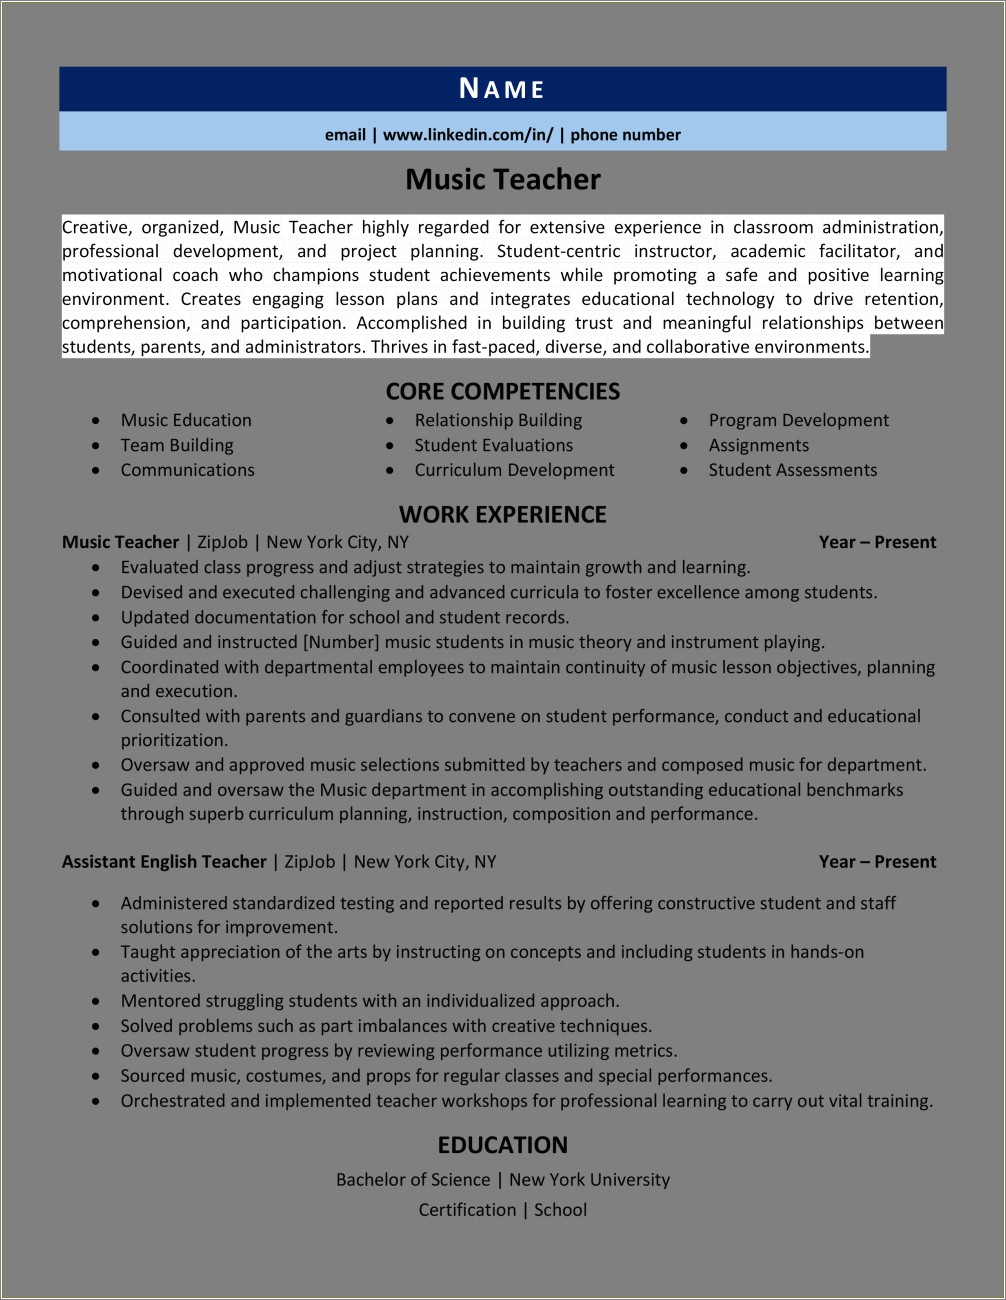 Sample Resume For Technology Educator Higher Education